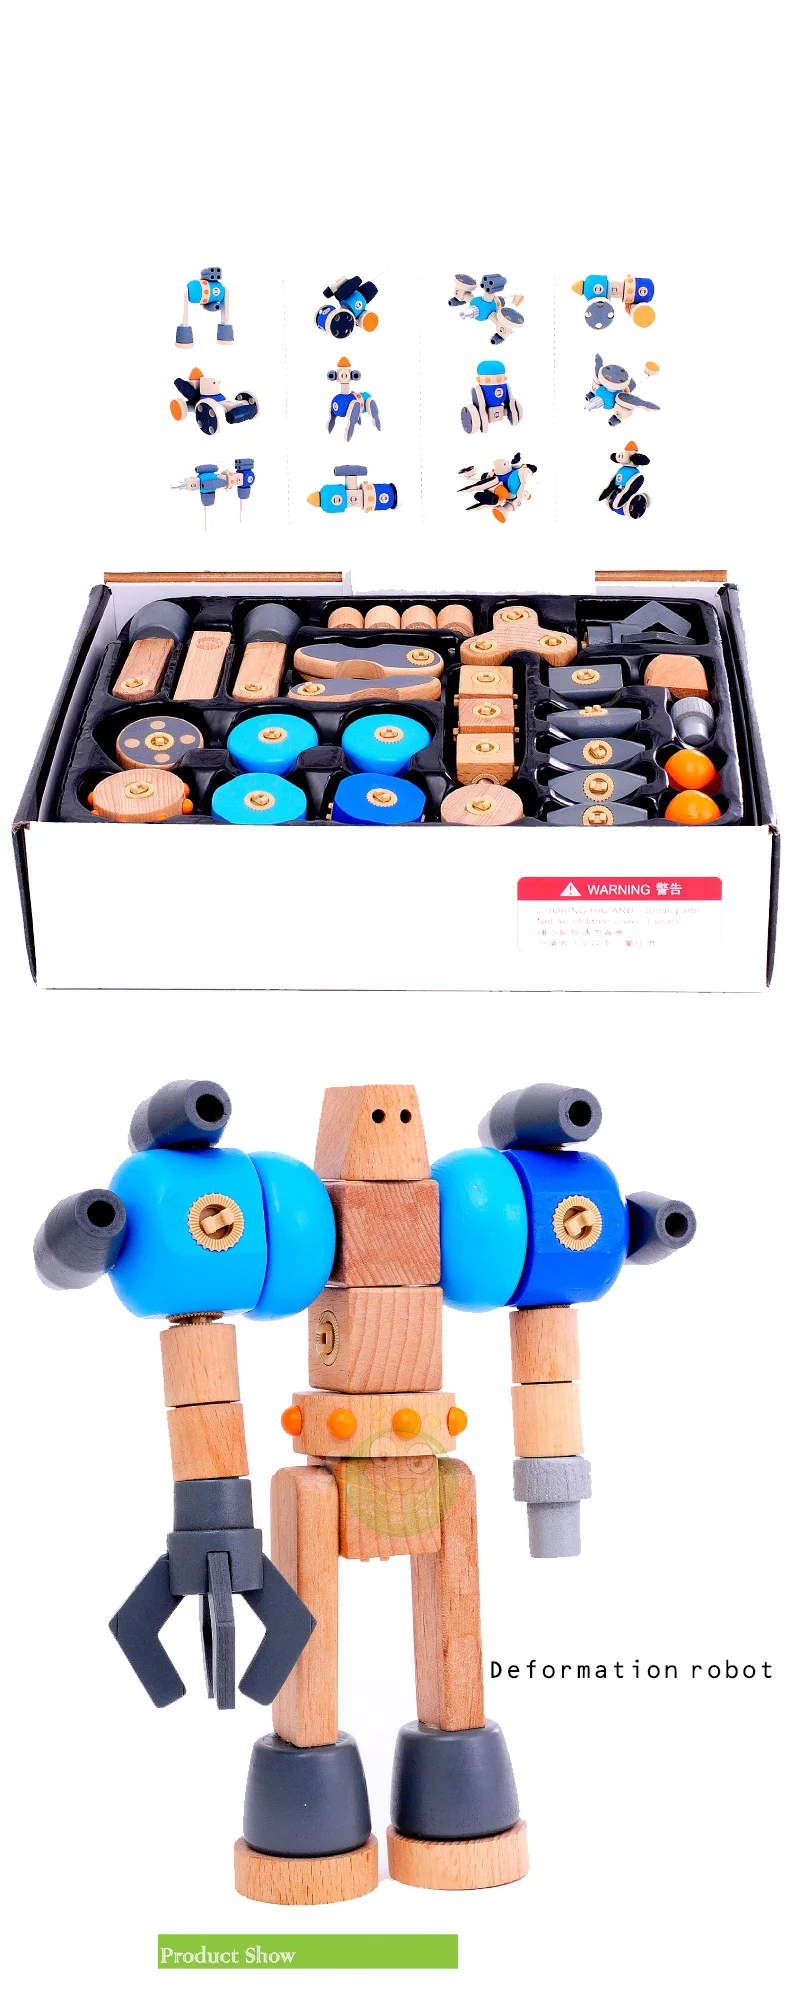 Детская деревянная развивающая игрушка гайка разборка комбинированная игрушка разборка сборка самолет робот игрушка